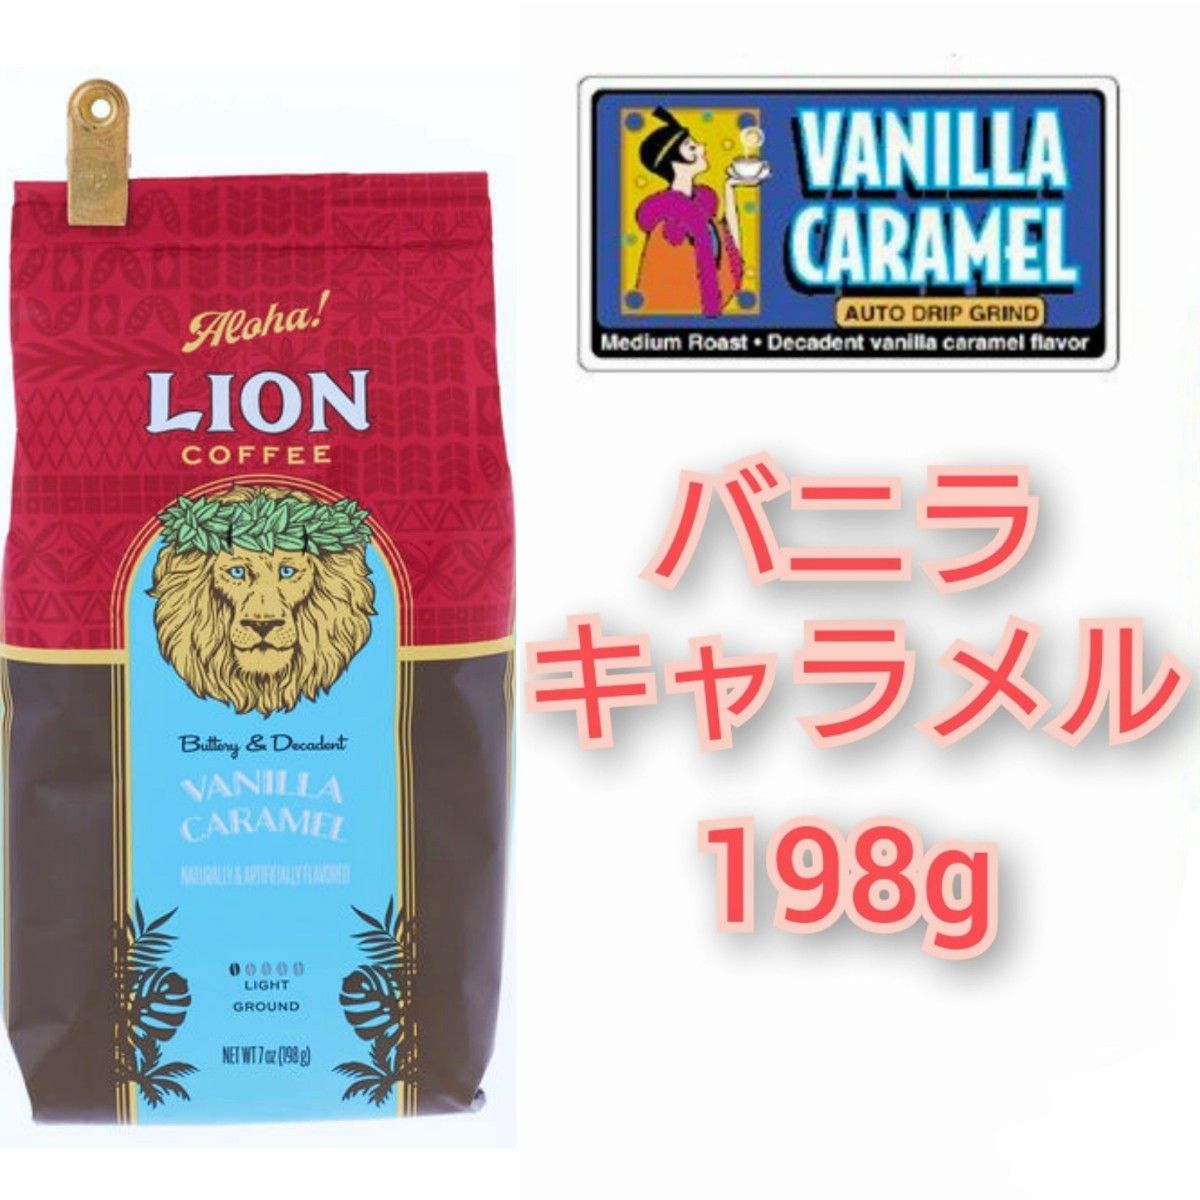 ライオンコーヒー バニラキャラメル 198g 日本限定フレーバー Lion coffee ハワイ 珈琲 フレーバーコーヒー